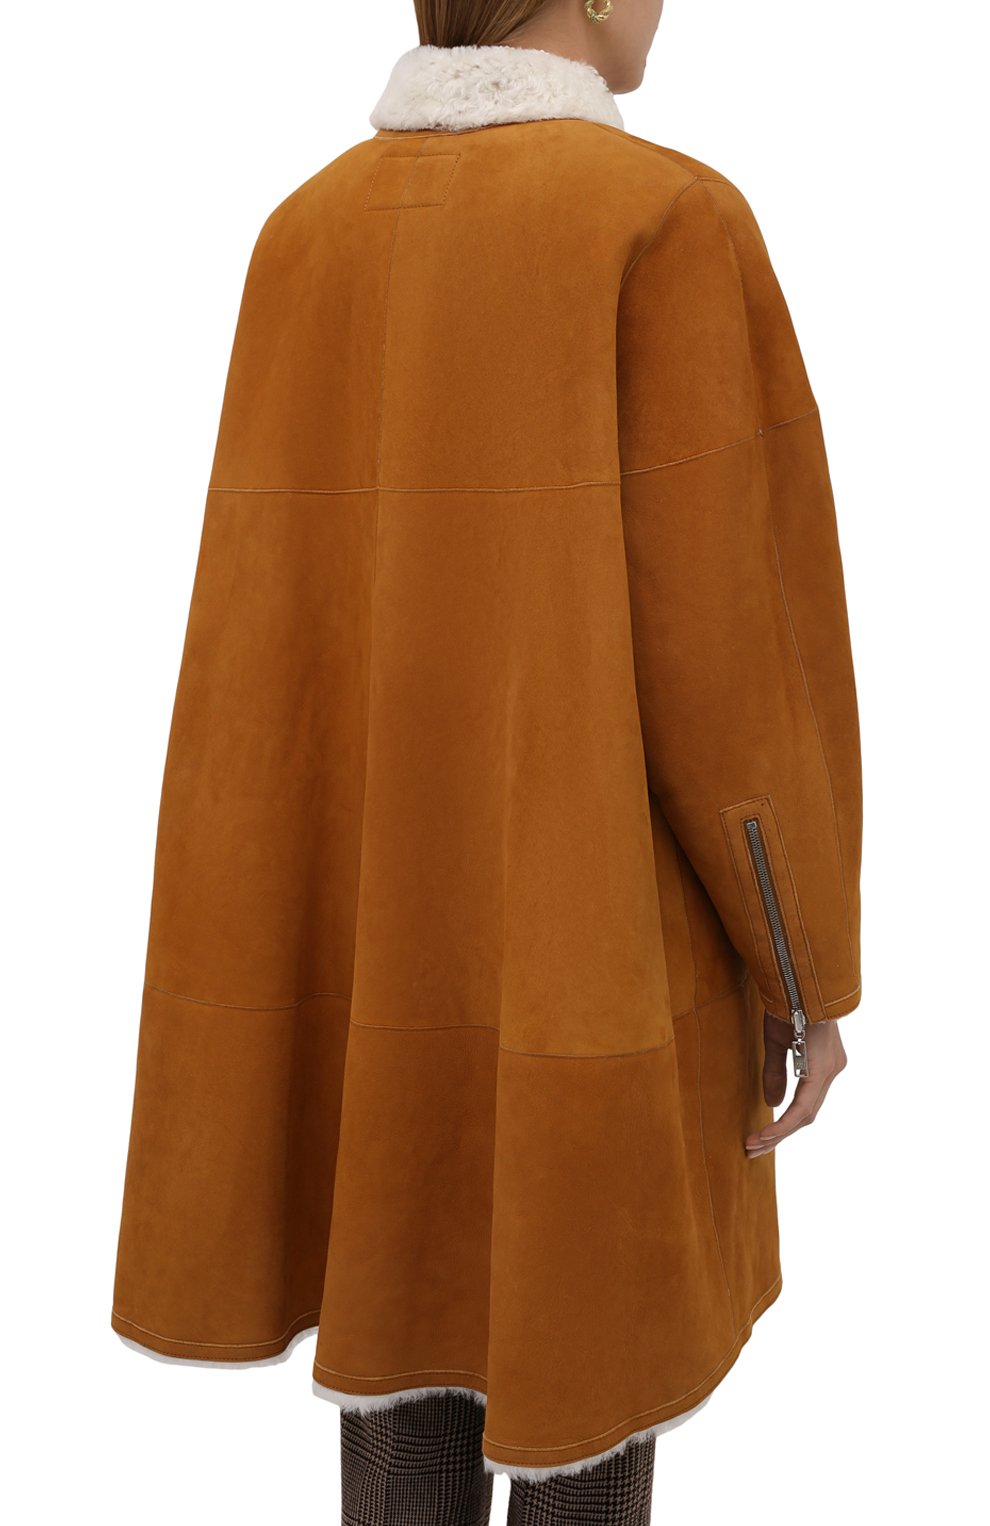 Pernia shearling kimono jacket, The Row